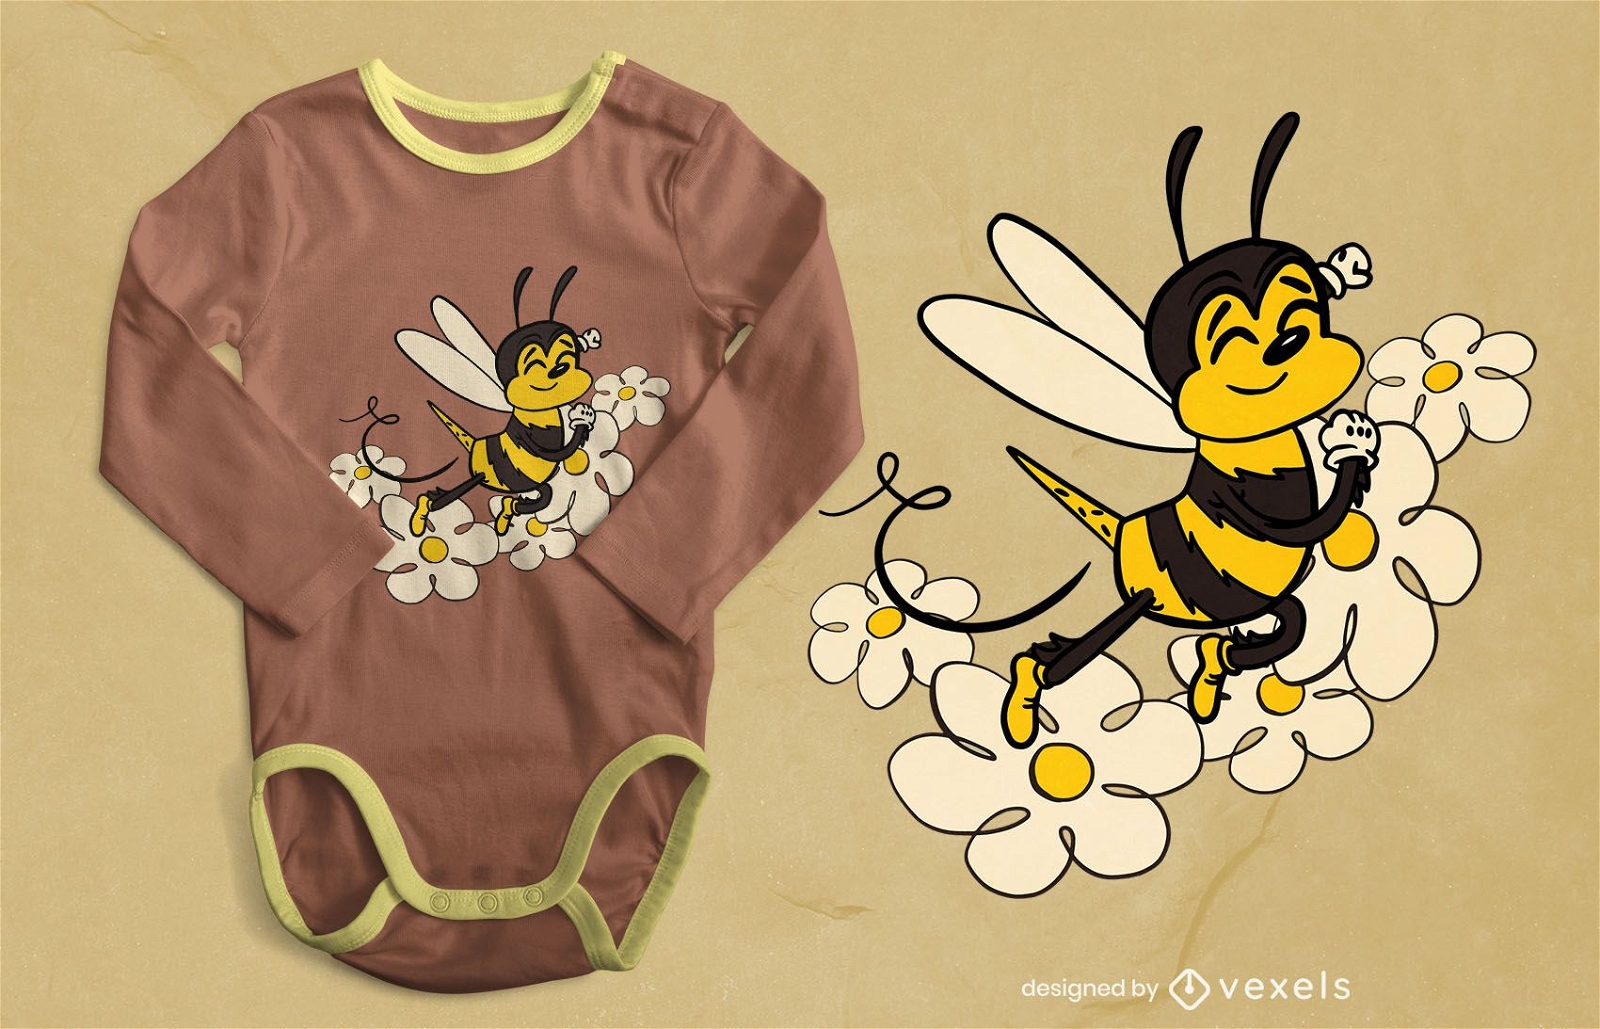 Cute bee t-shirt design